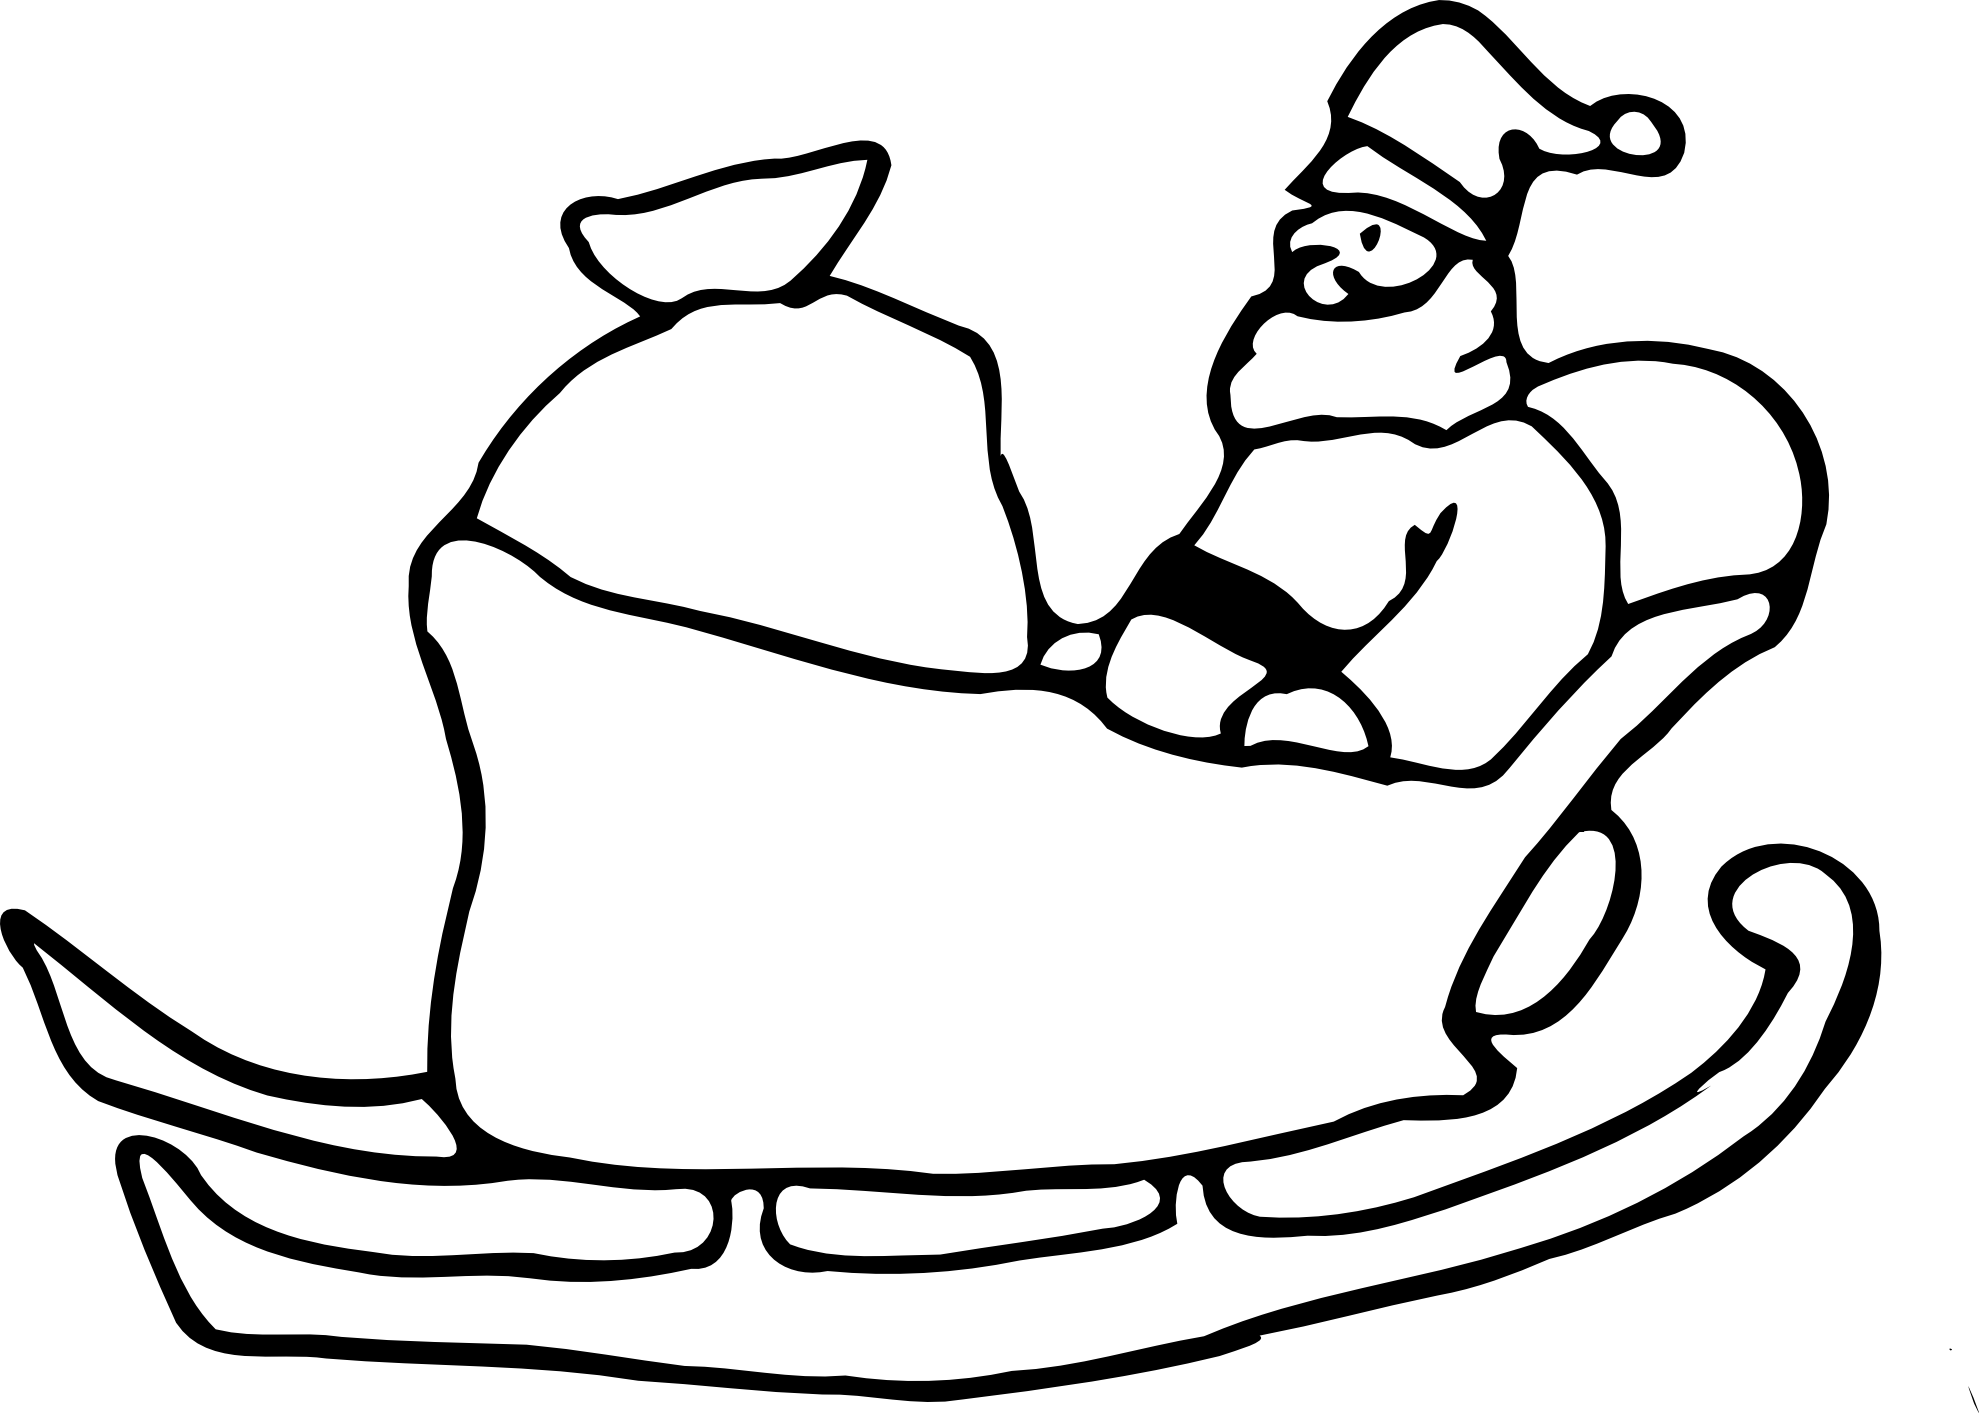 Santa In His Sleigh Xmas Christmas Coloring Book Colouring Black White